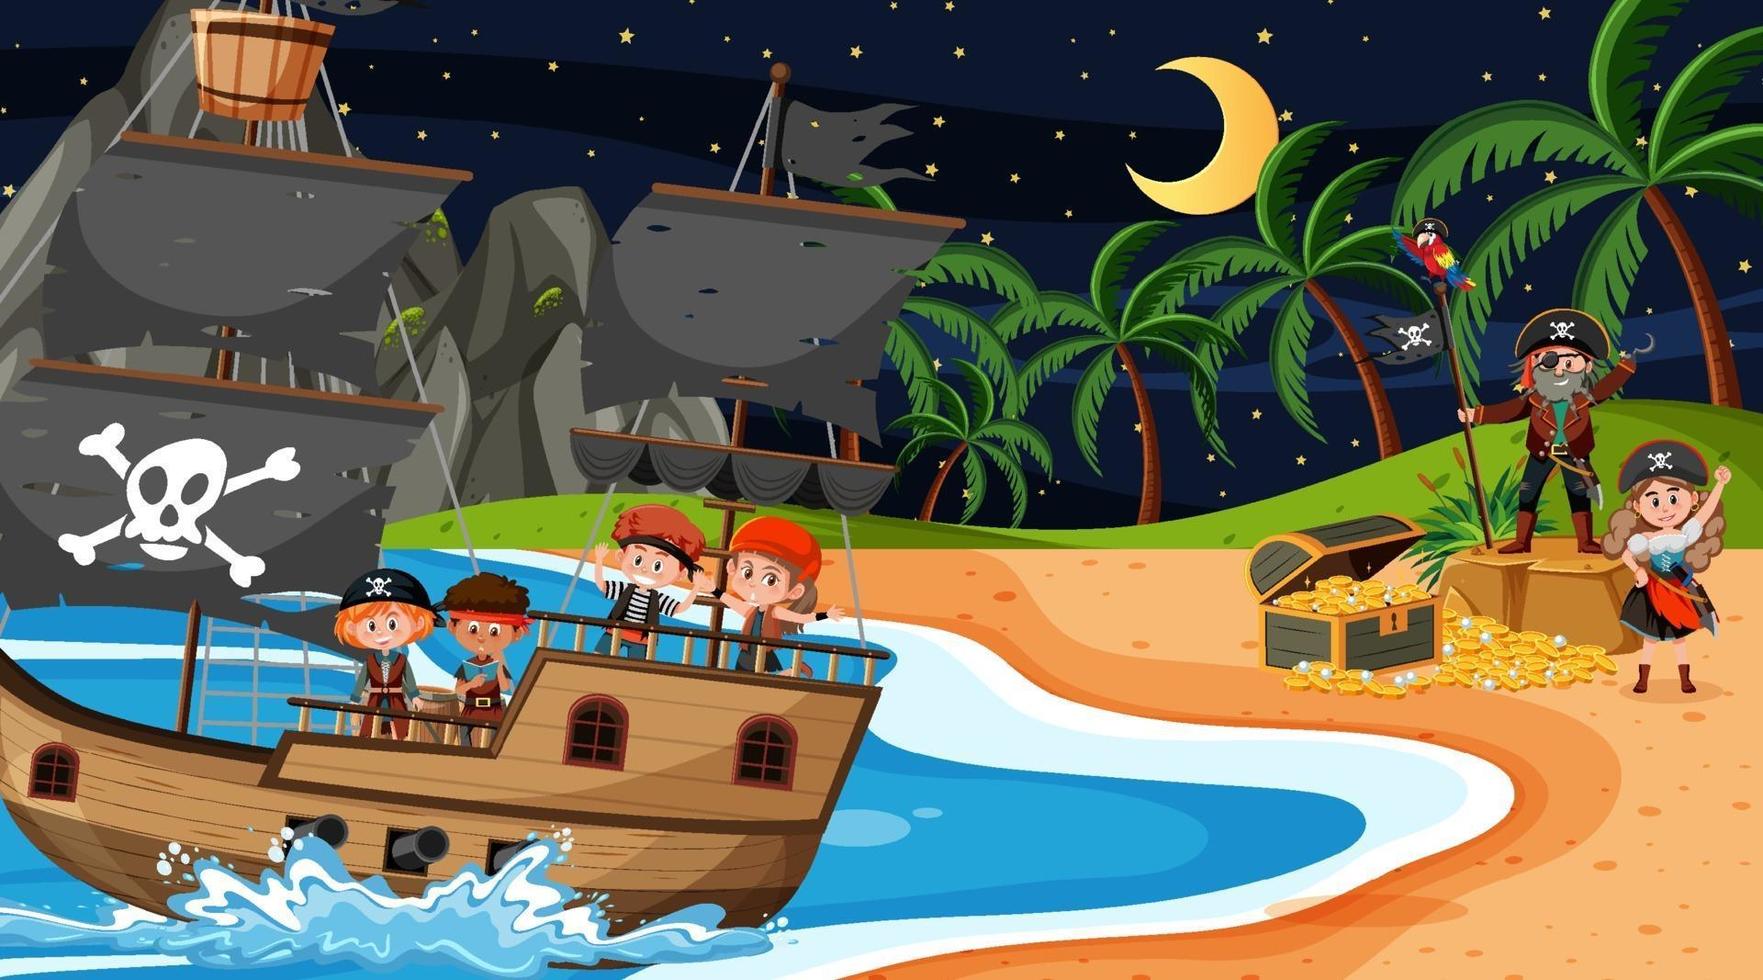 Treasure Island-scène 's nachts met piratenkinderen op het schip vector